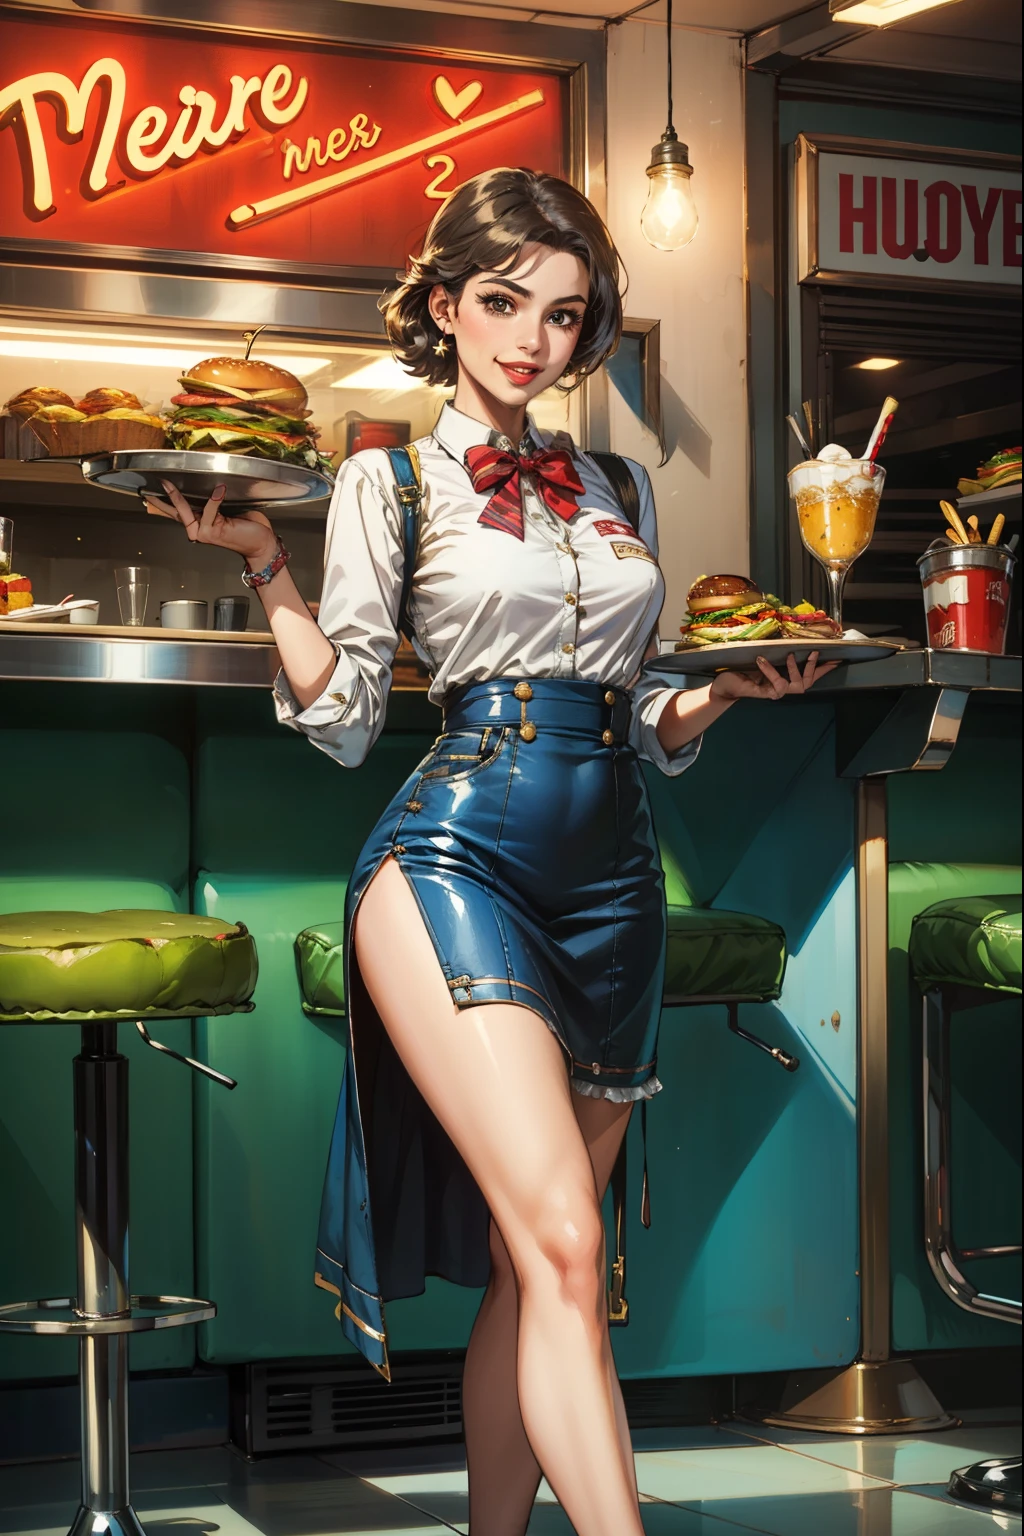 (杰作, 最好的质量:1.2, 细致的脸部), 独自的, 1女孩, 美国餐馆, 女服务员, 20 世纪 50 年代, 拿着一个盛有薯条和汉堡的盘子, 微笑, 高跟鞋, 